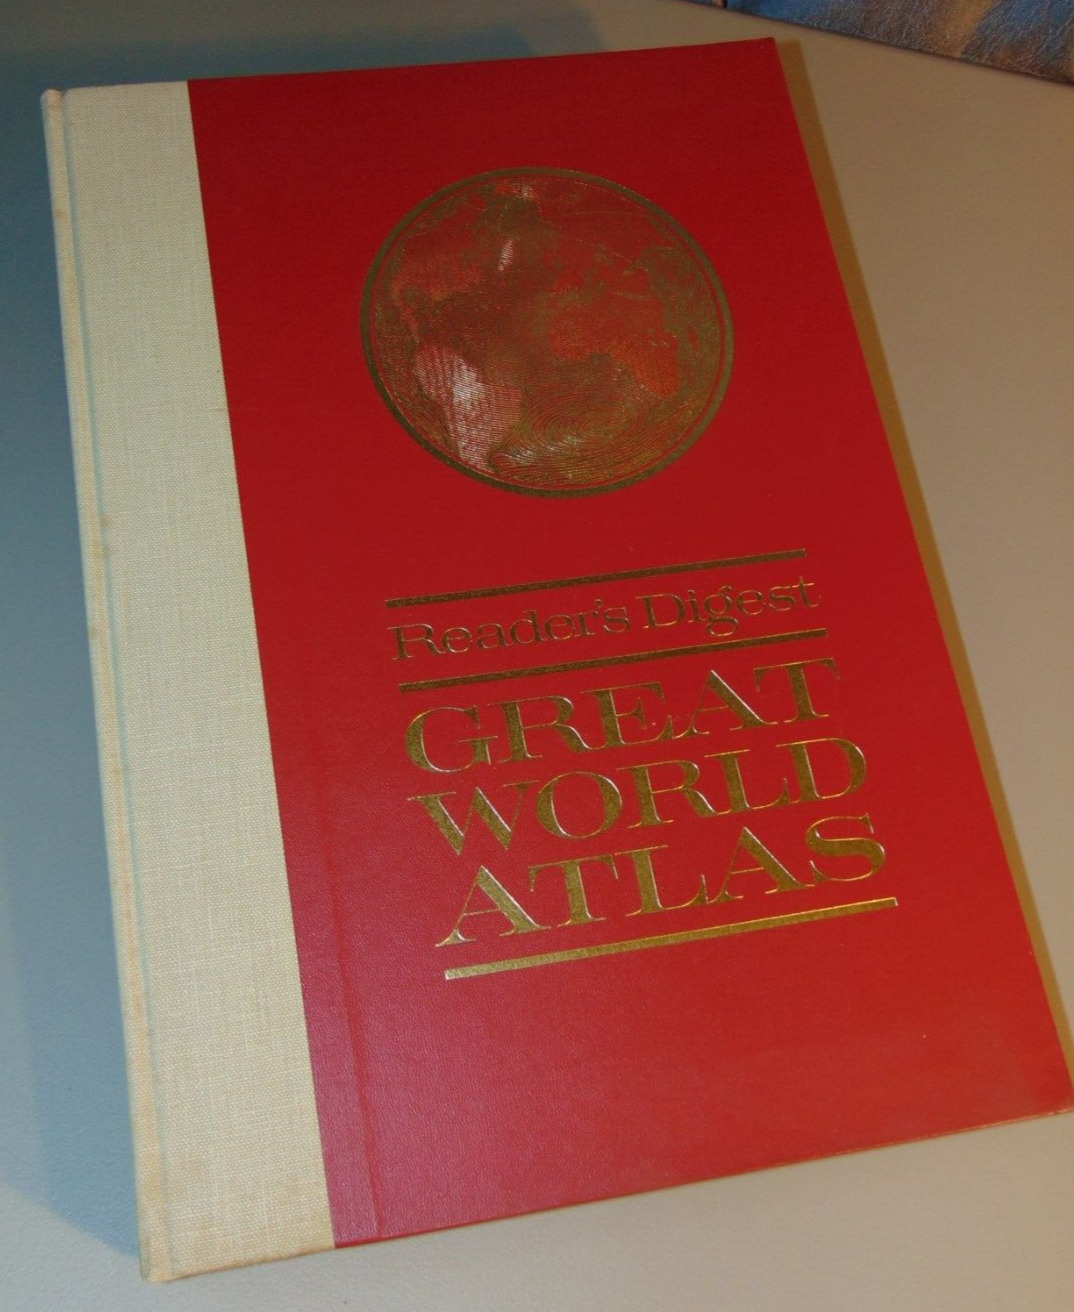 GREAT WORLD ATLAS Book - The Reader\'s Digest Association - Vintage 1963 (color)